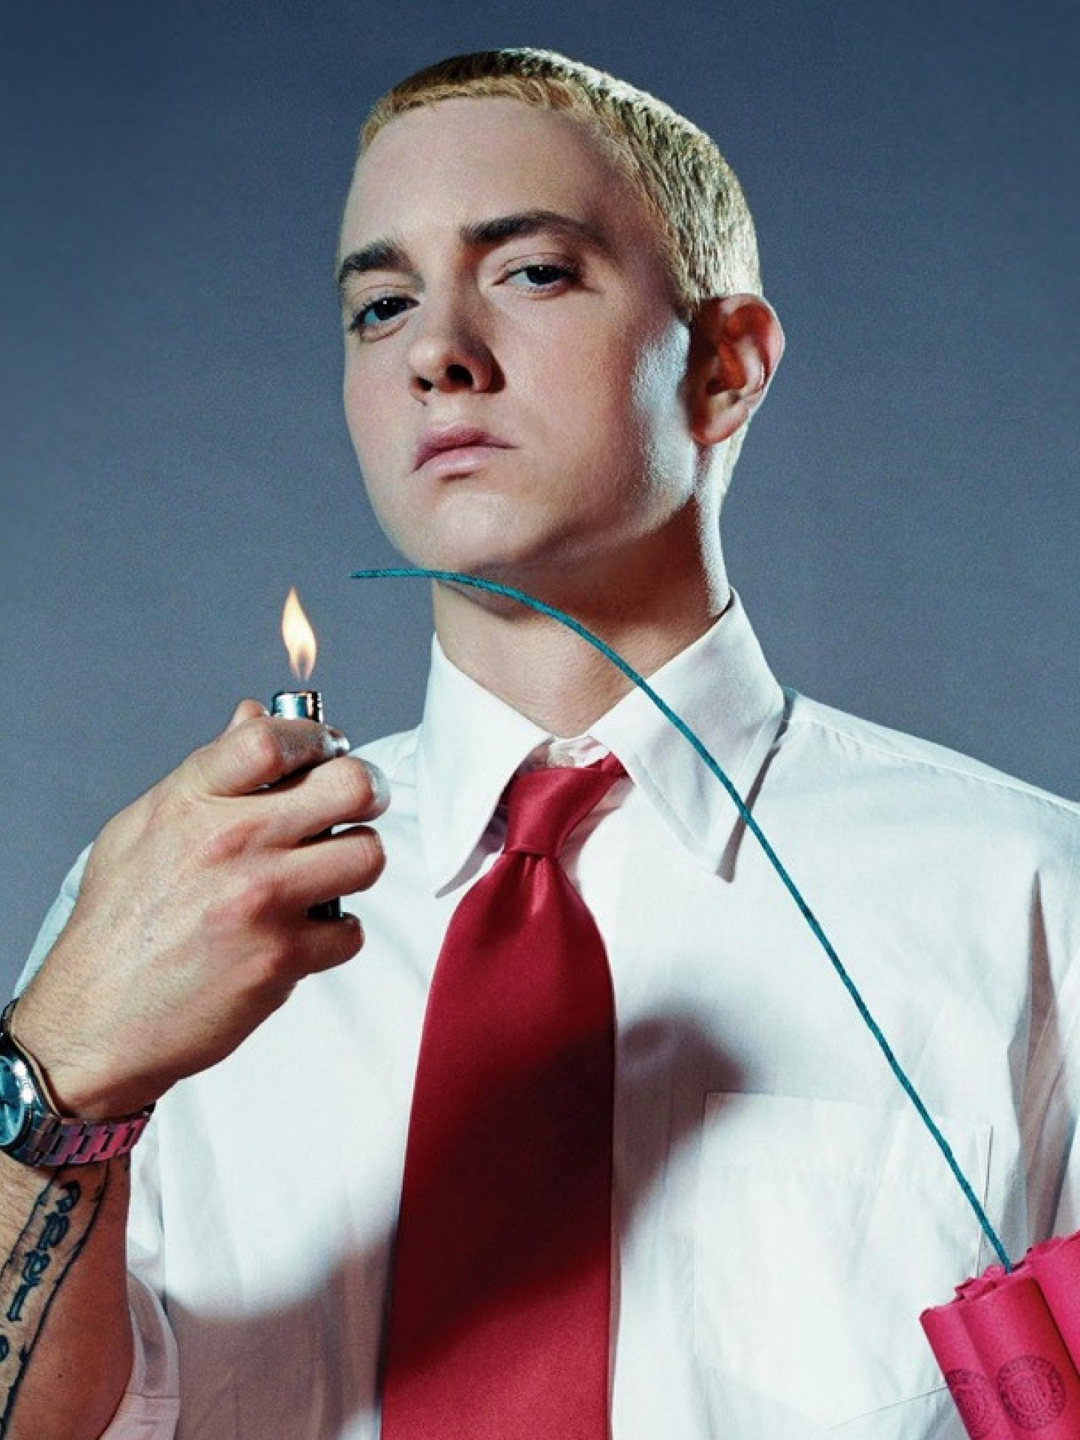 Eminem young pics